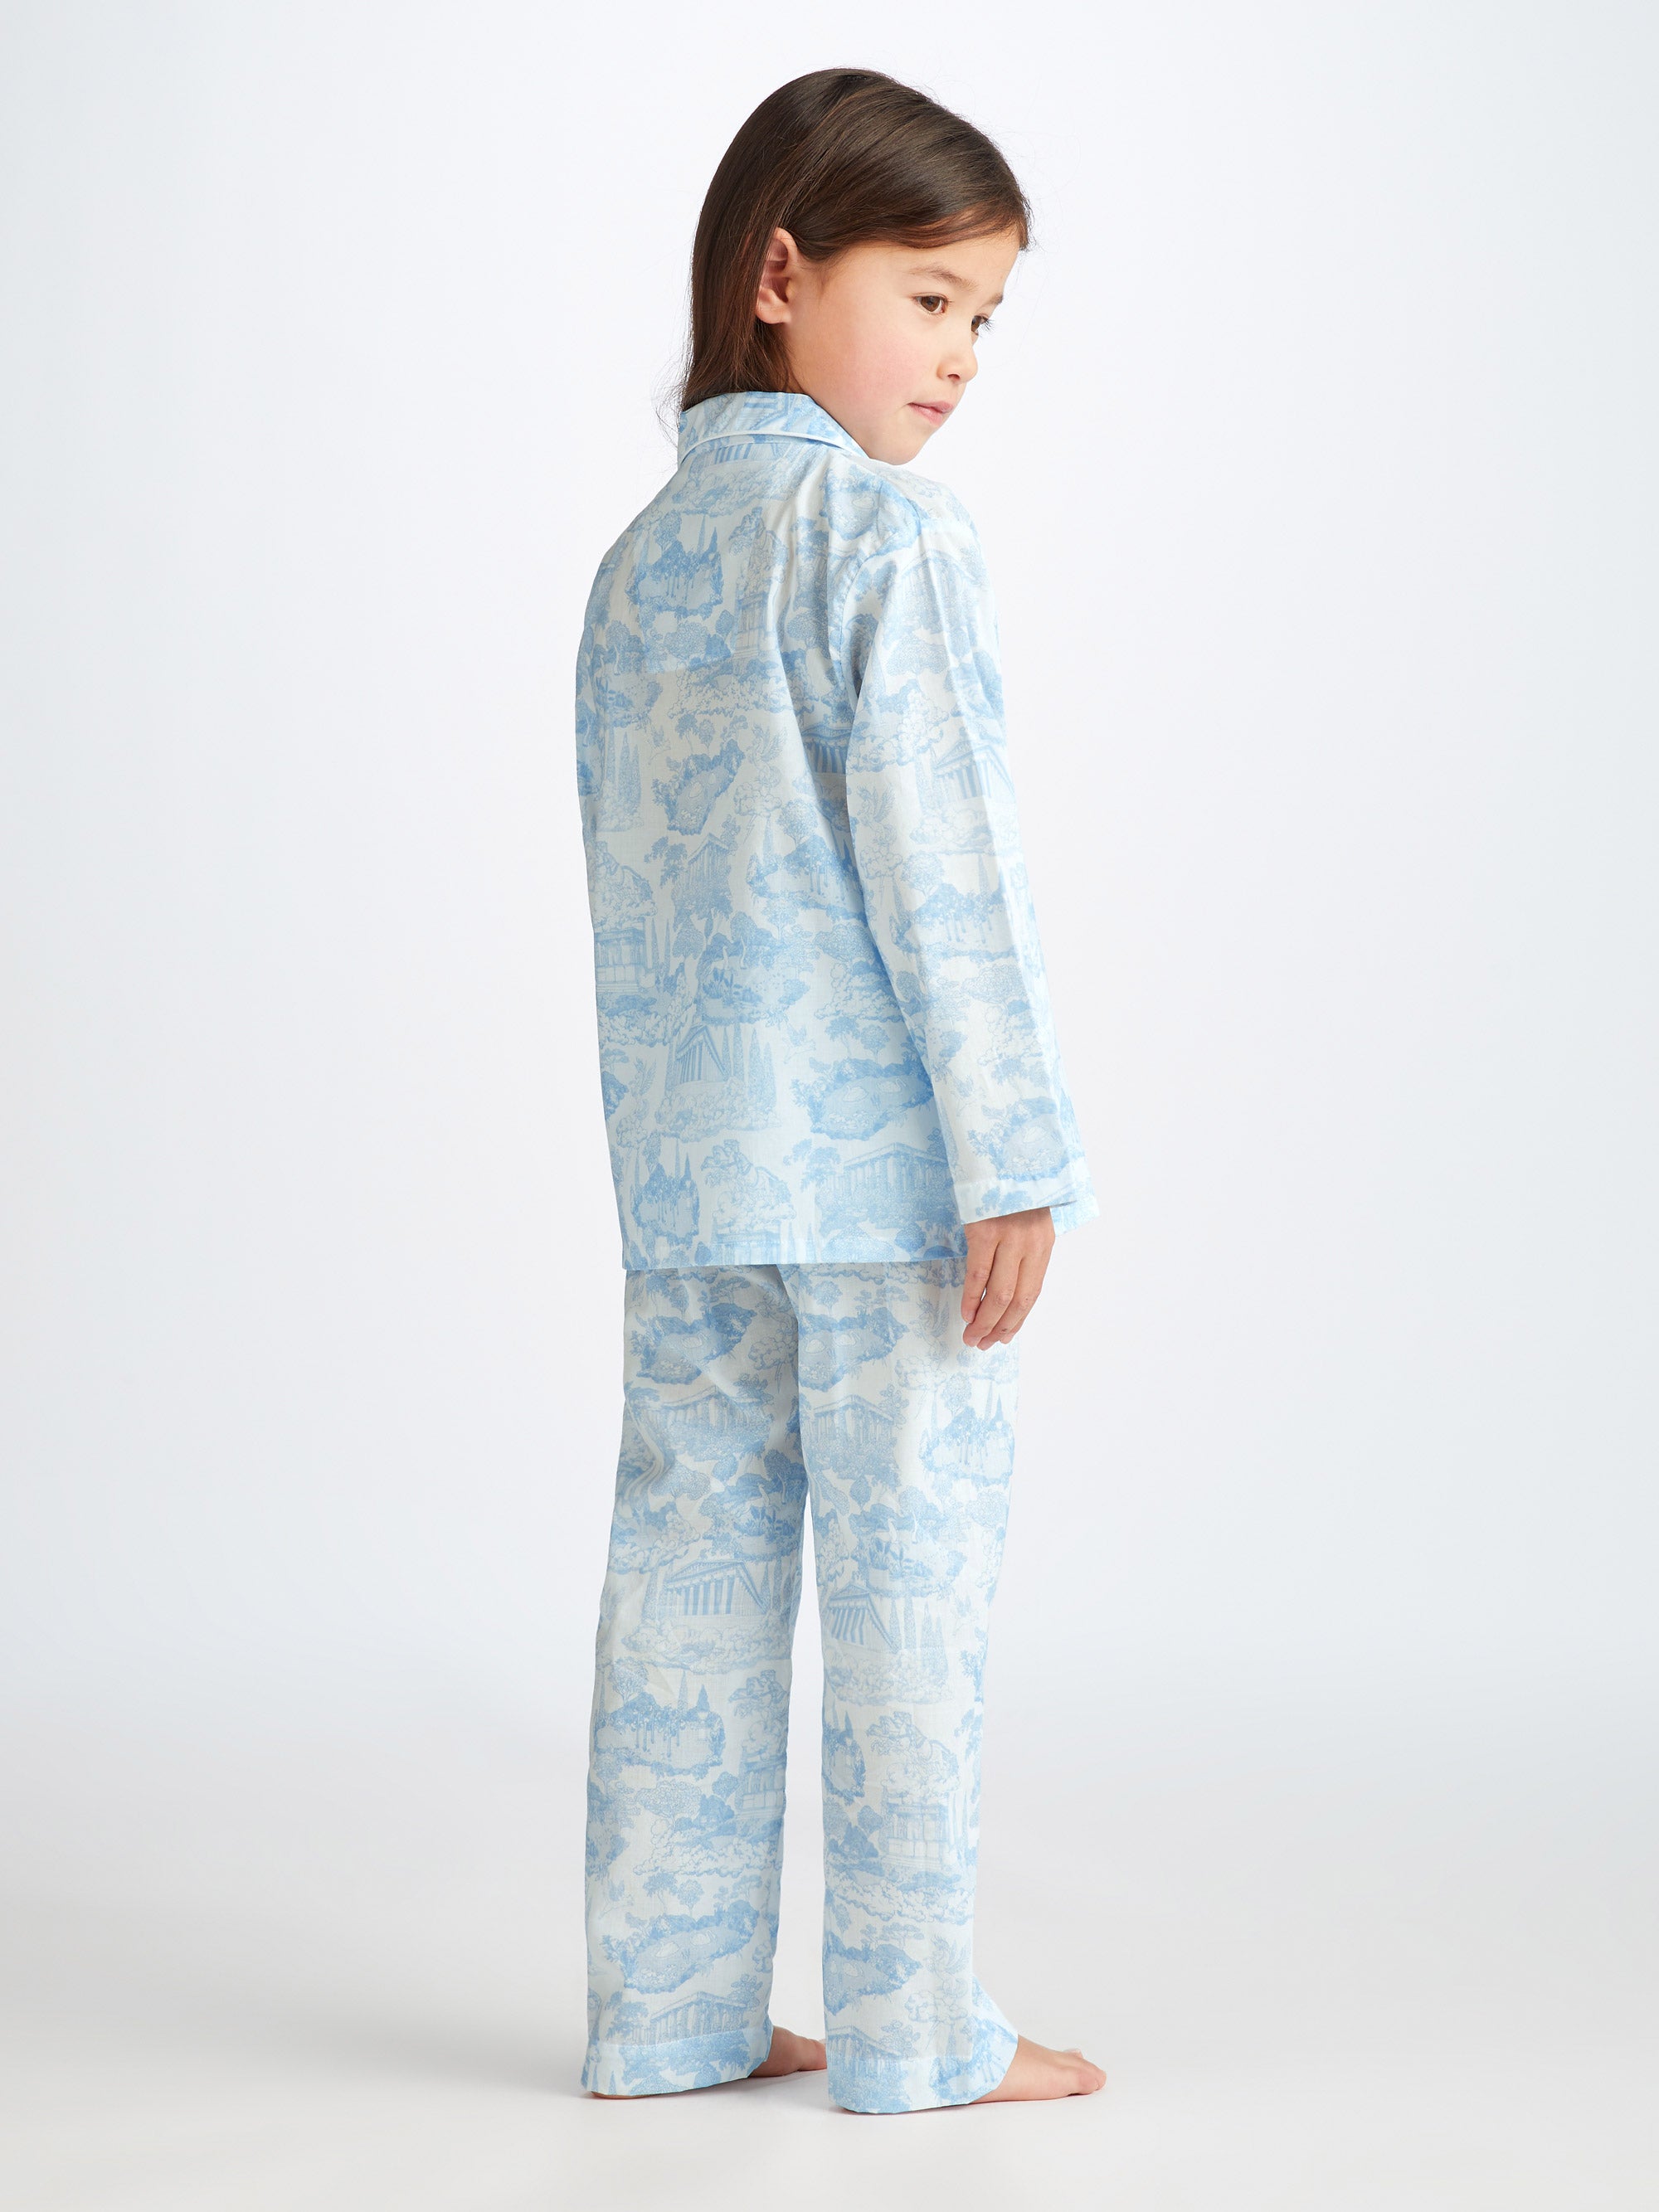 Kids' Pyjamas Ledbury 77 Cotton Batiste White